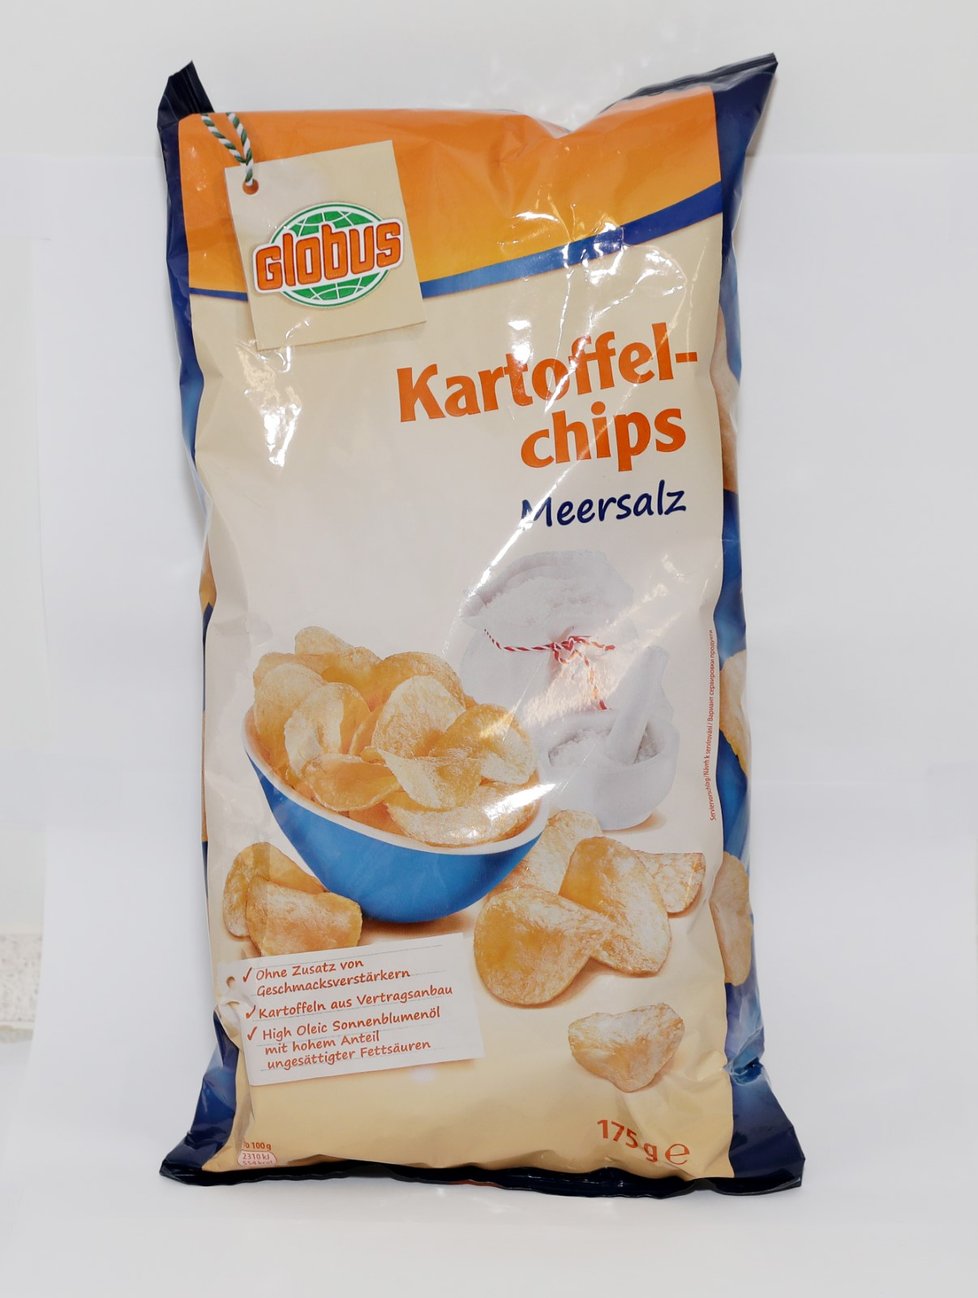 Tučnější Globus Kartoffel-chips Meersalz Chipsy příjemné chuti a velmi dobré barvy. Vůně byla méně výrazná. Byly tučnější a akorát slané. Spotřebitelé poznamenali, že chipsy měly cizí vůni, kterou nedovedli specifikovat.